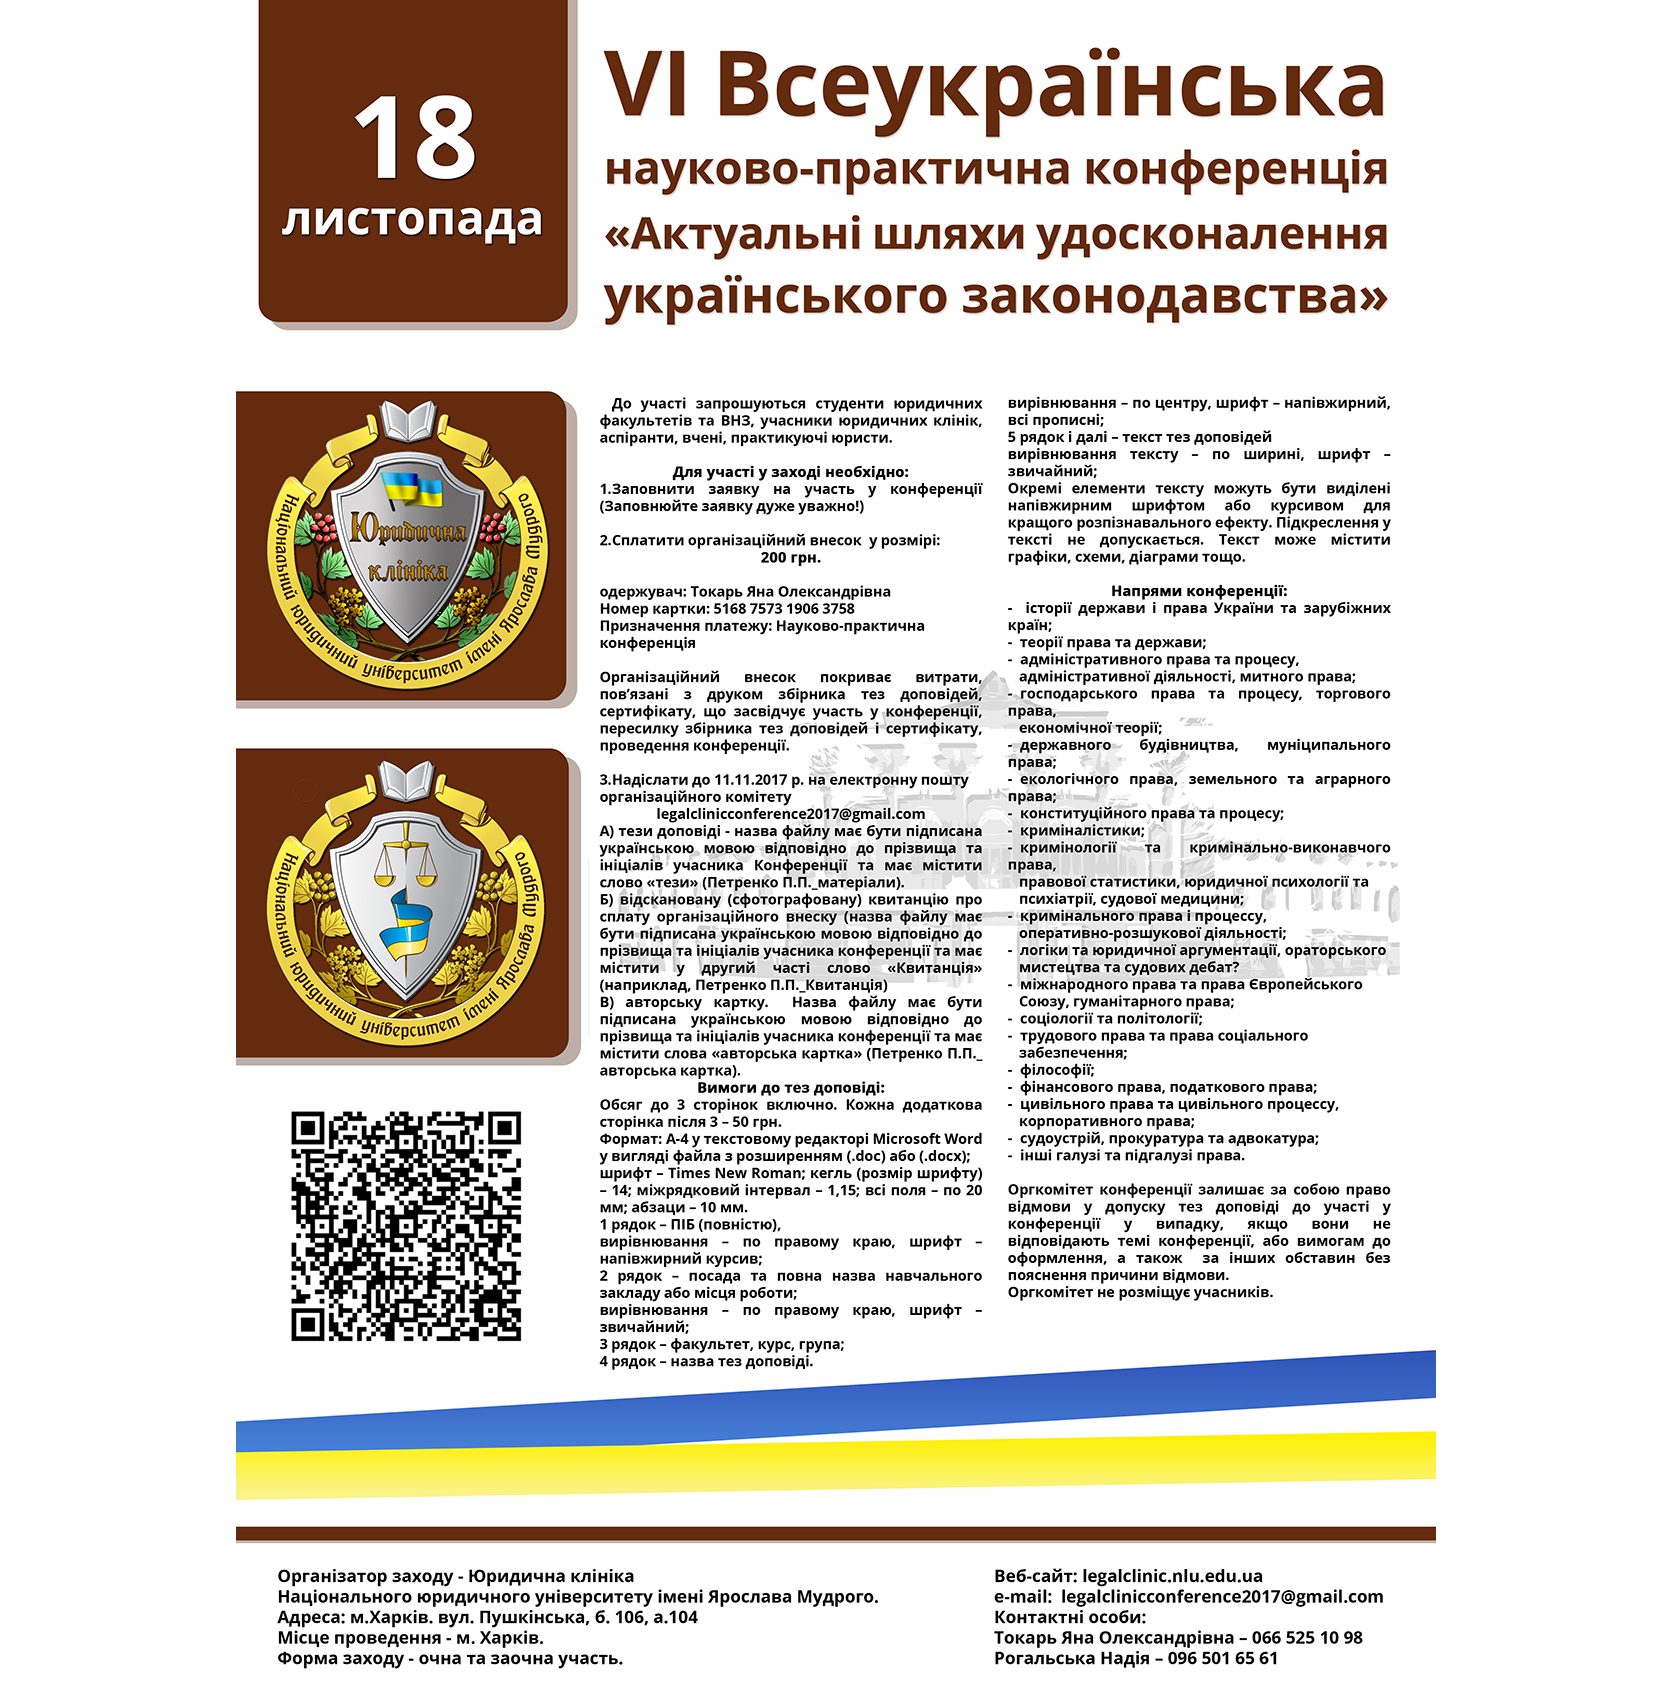 VI Всеукраїнська науково-практична конференція  «Актуальні шляхи удосконалення українського законодавства»